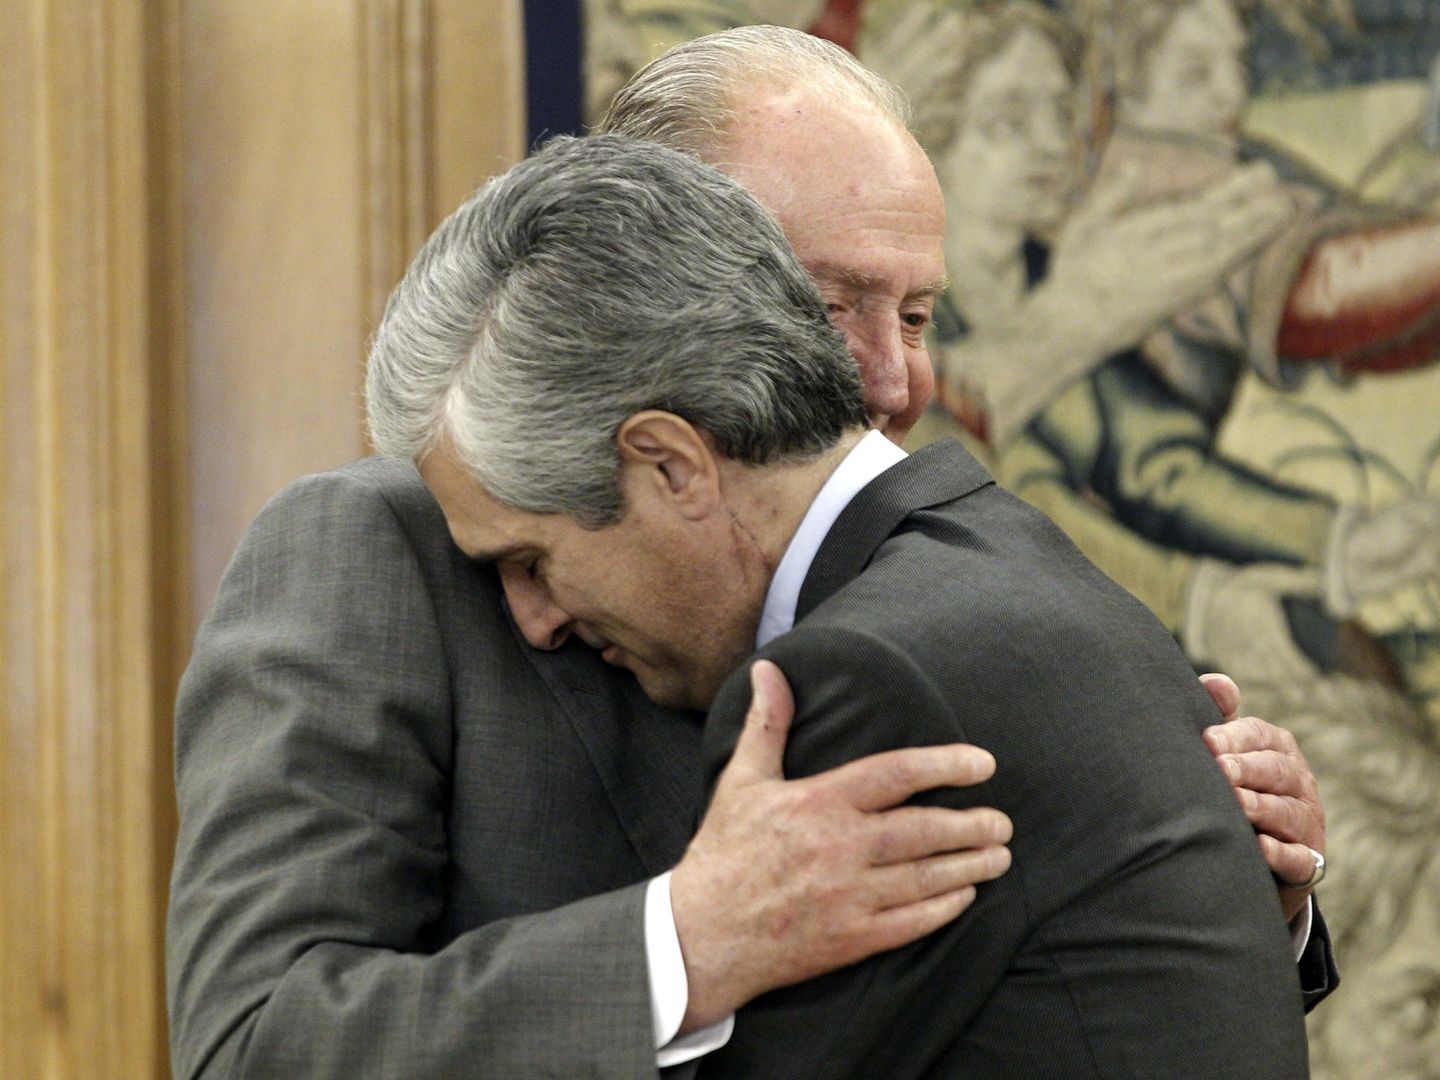 El rey Juan Carlos saludando de manera muy afectuosa a Adolfo Suárez Illana hijo, en una imagen de archivo. (EFE)